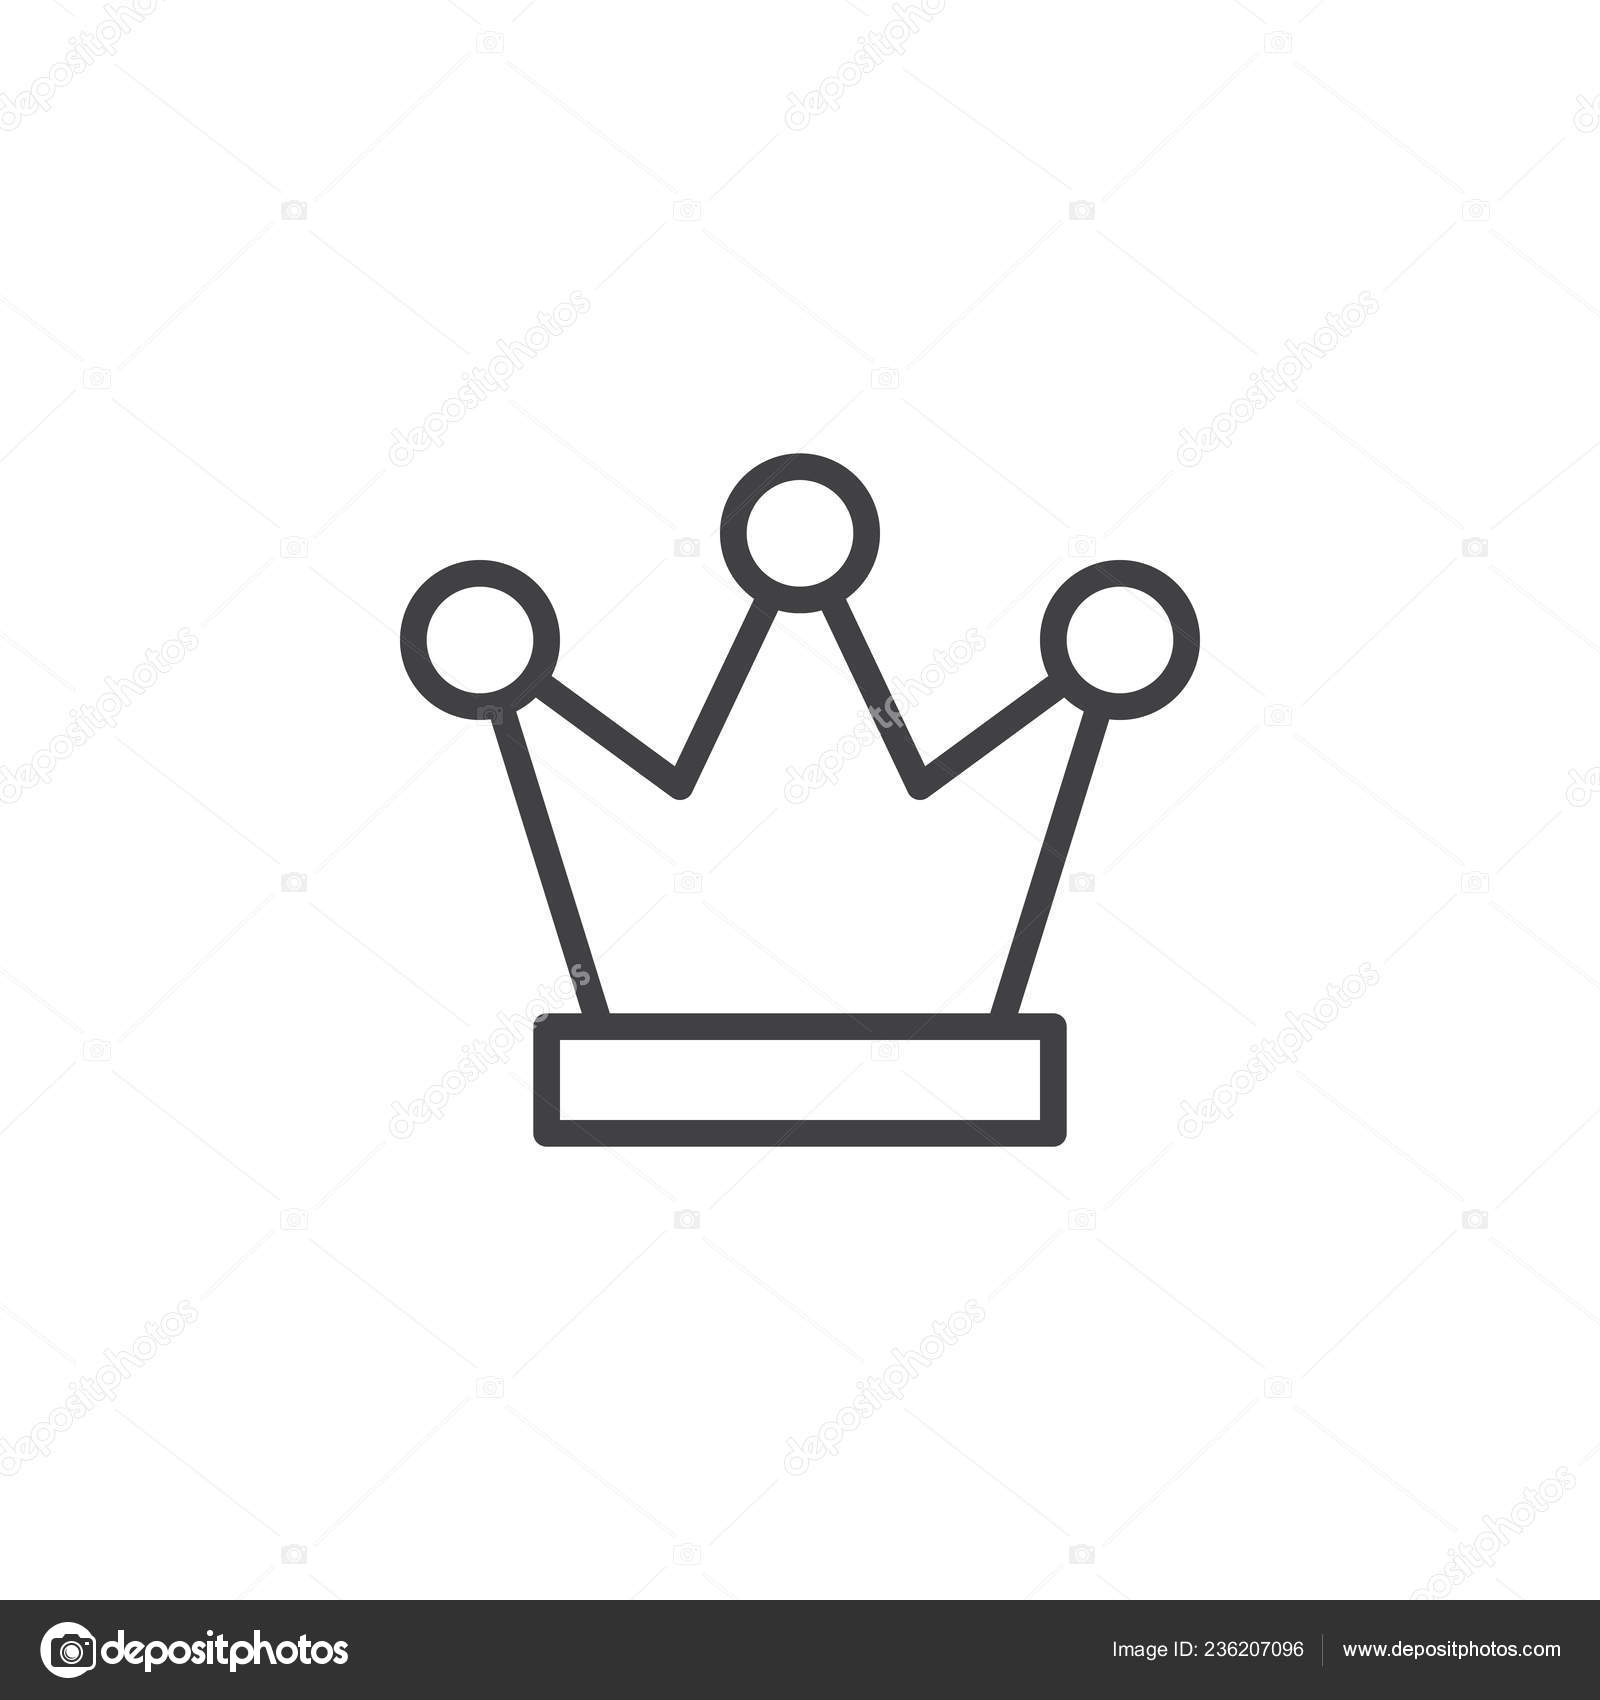 Vetores de Coroa De Rei E Rainha Símbolos De Xadrez Ícones e mais